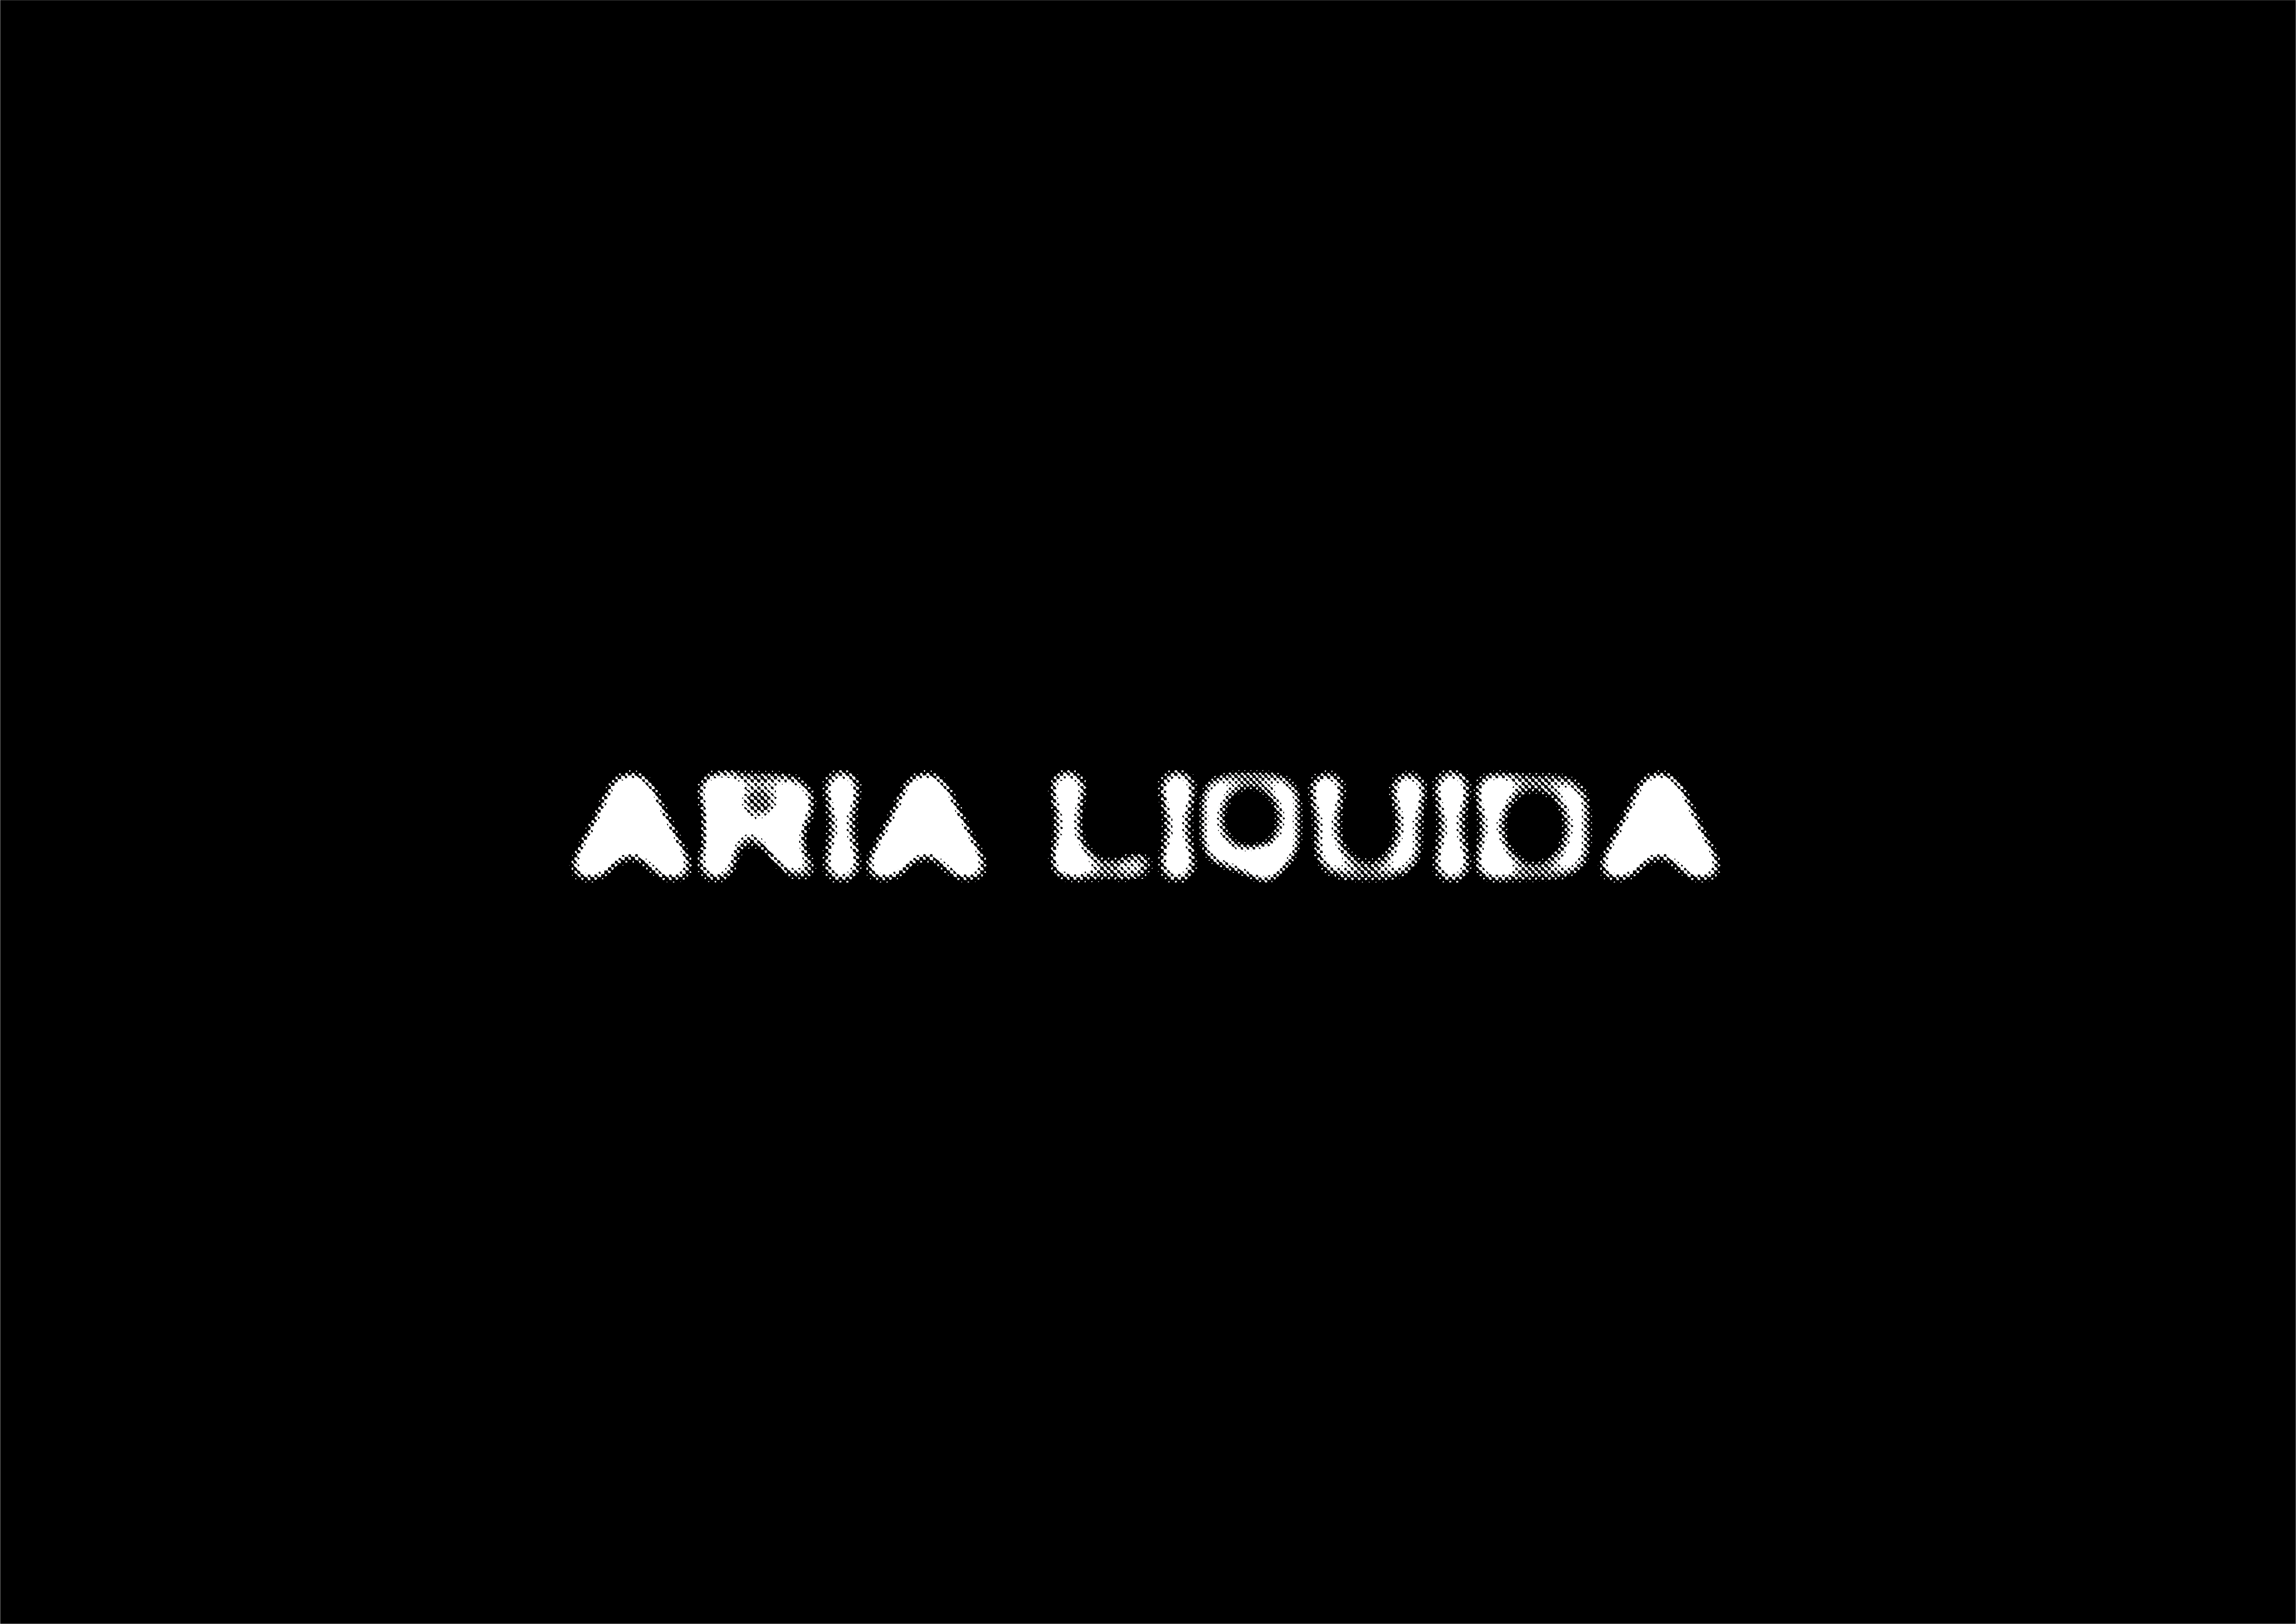 ARIA LIQUIDA - un cortometraggio sulla paura